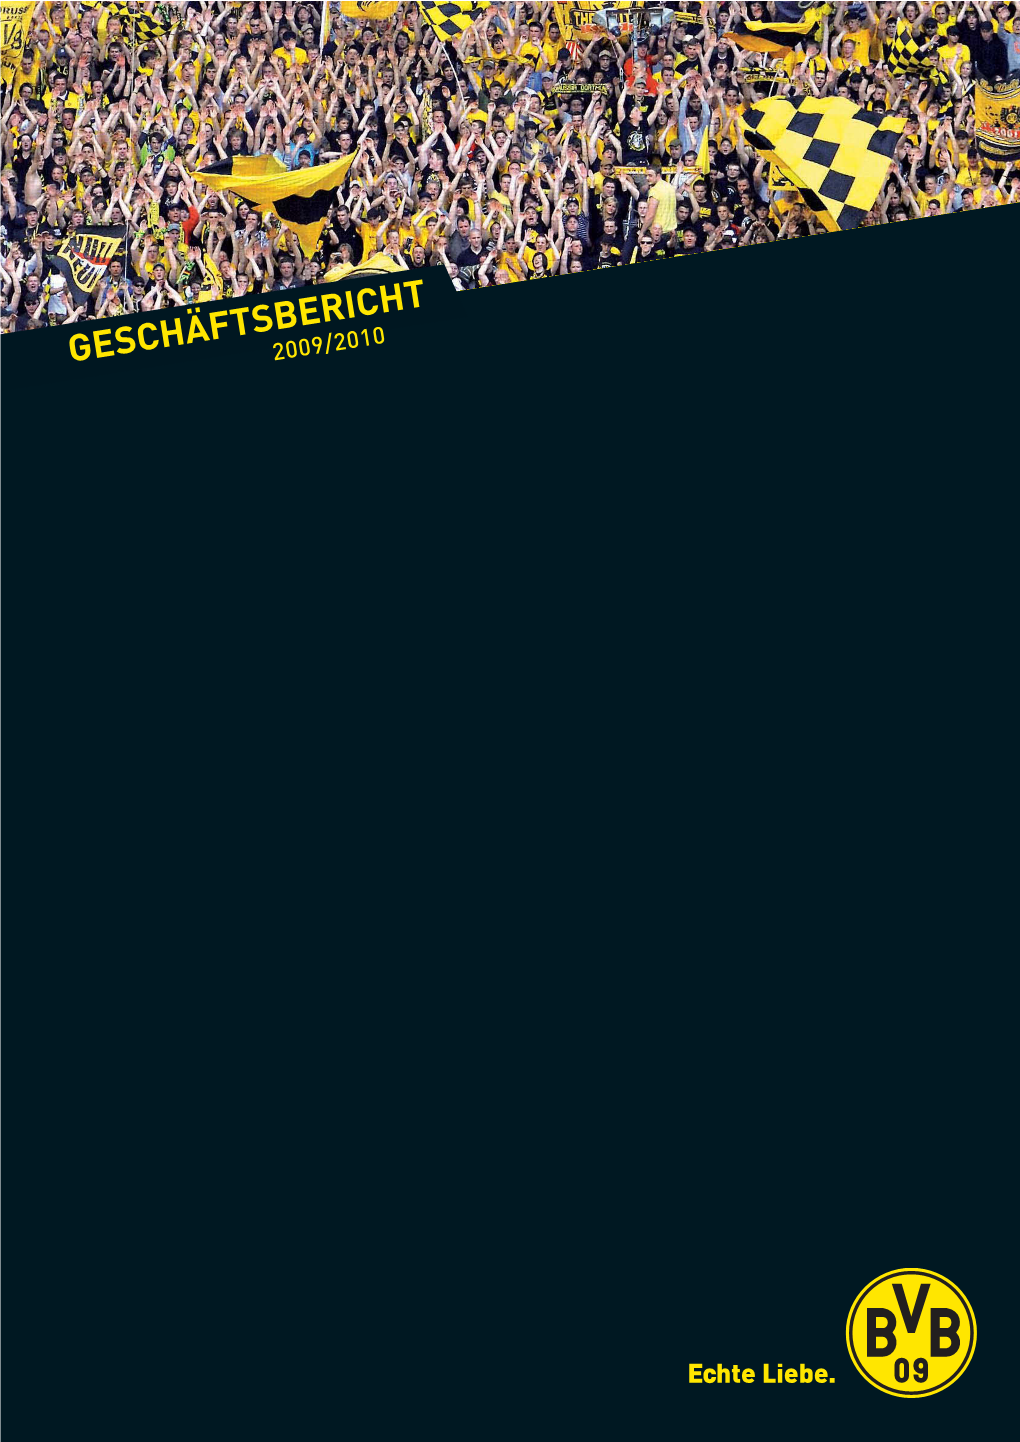 BVB Geschäftsbericht 2010